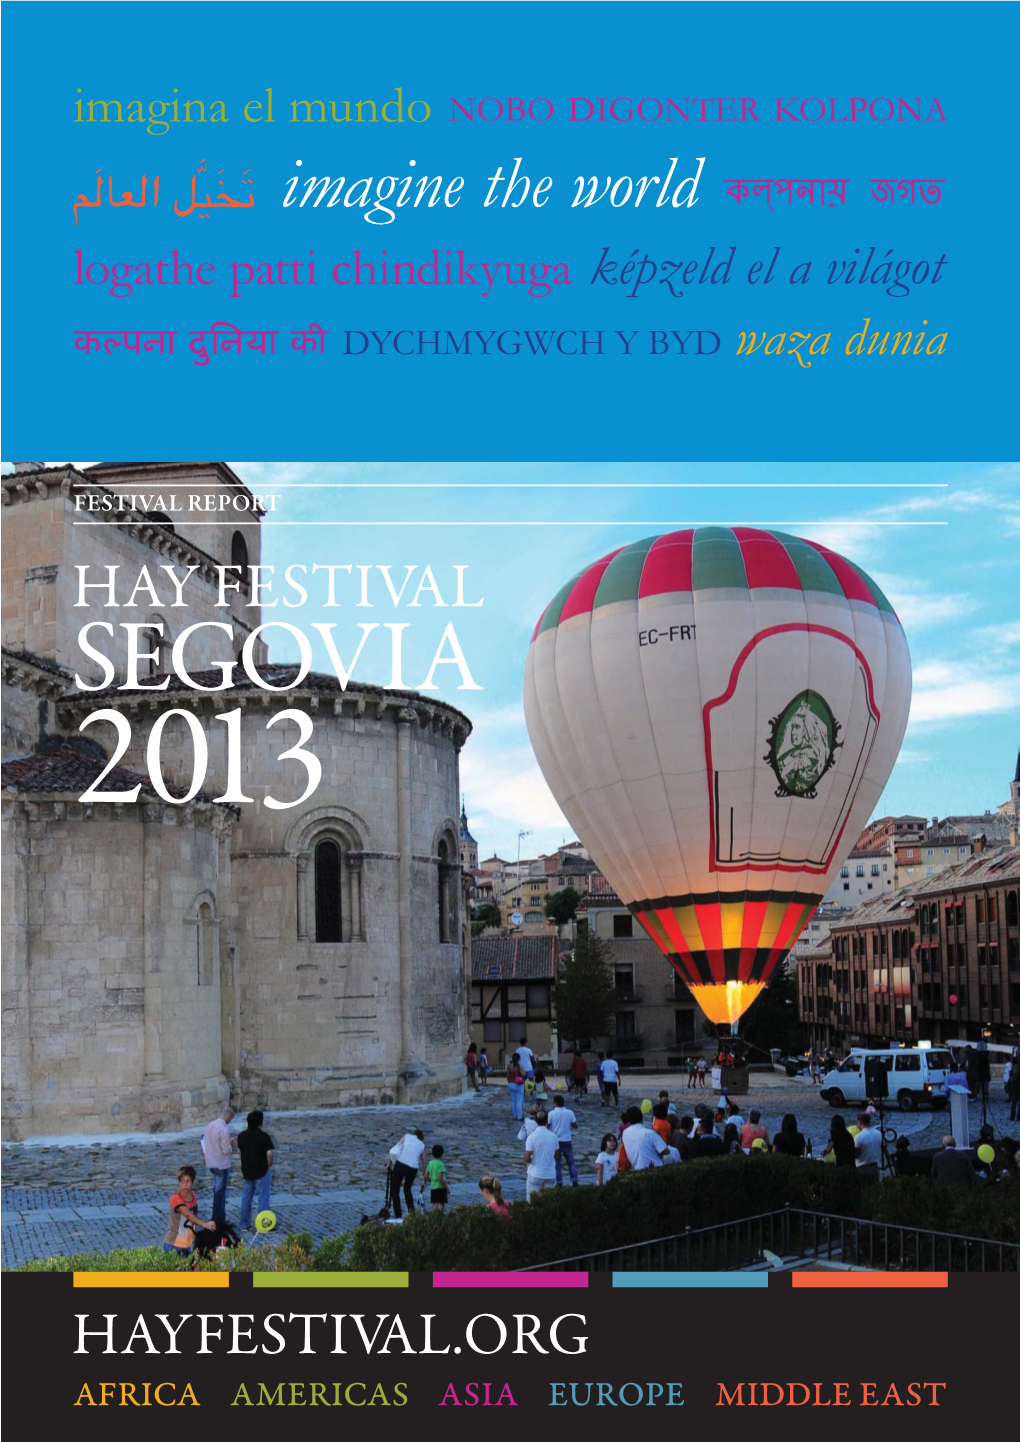 SEGOVIA 2013 Hay Festival Segovia 2013 Festival Report Contents